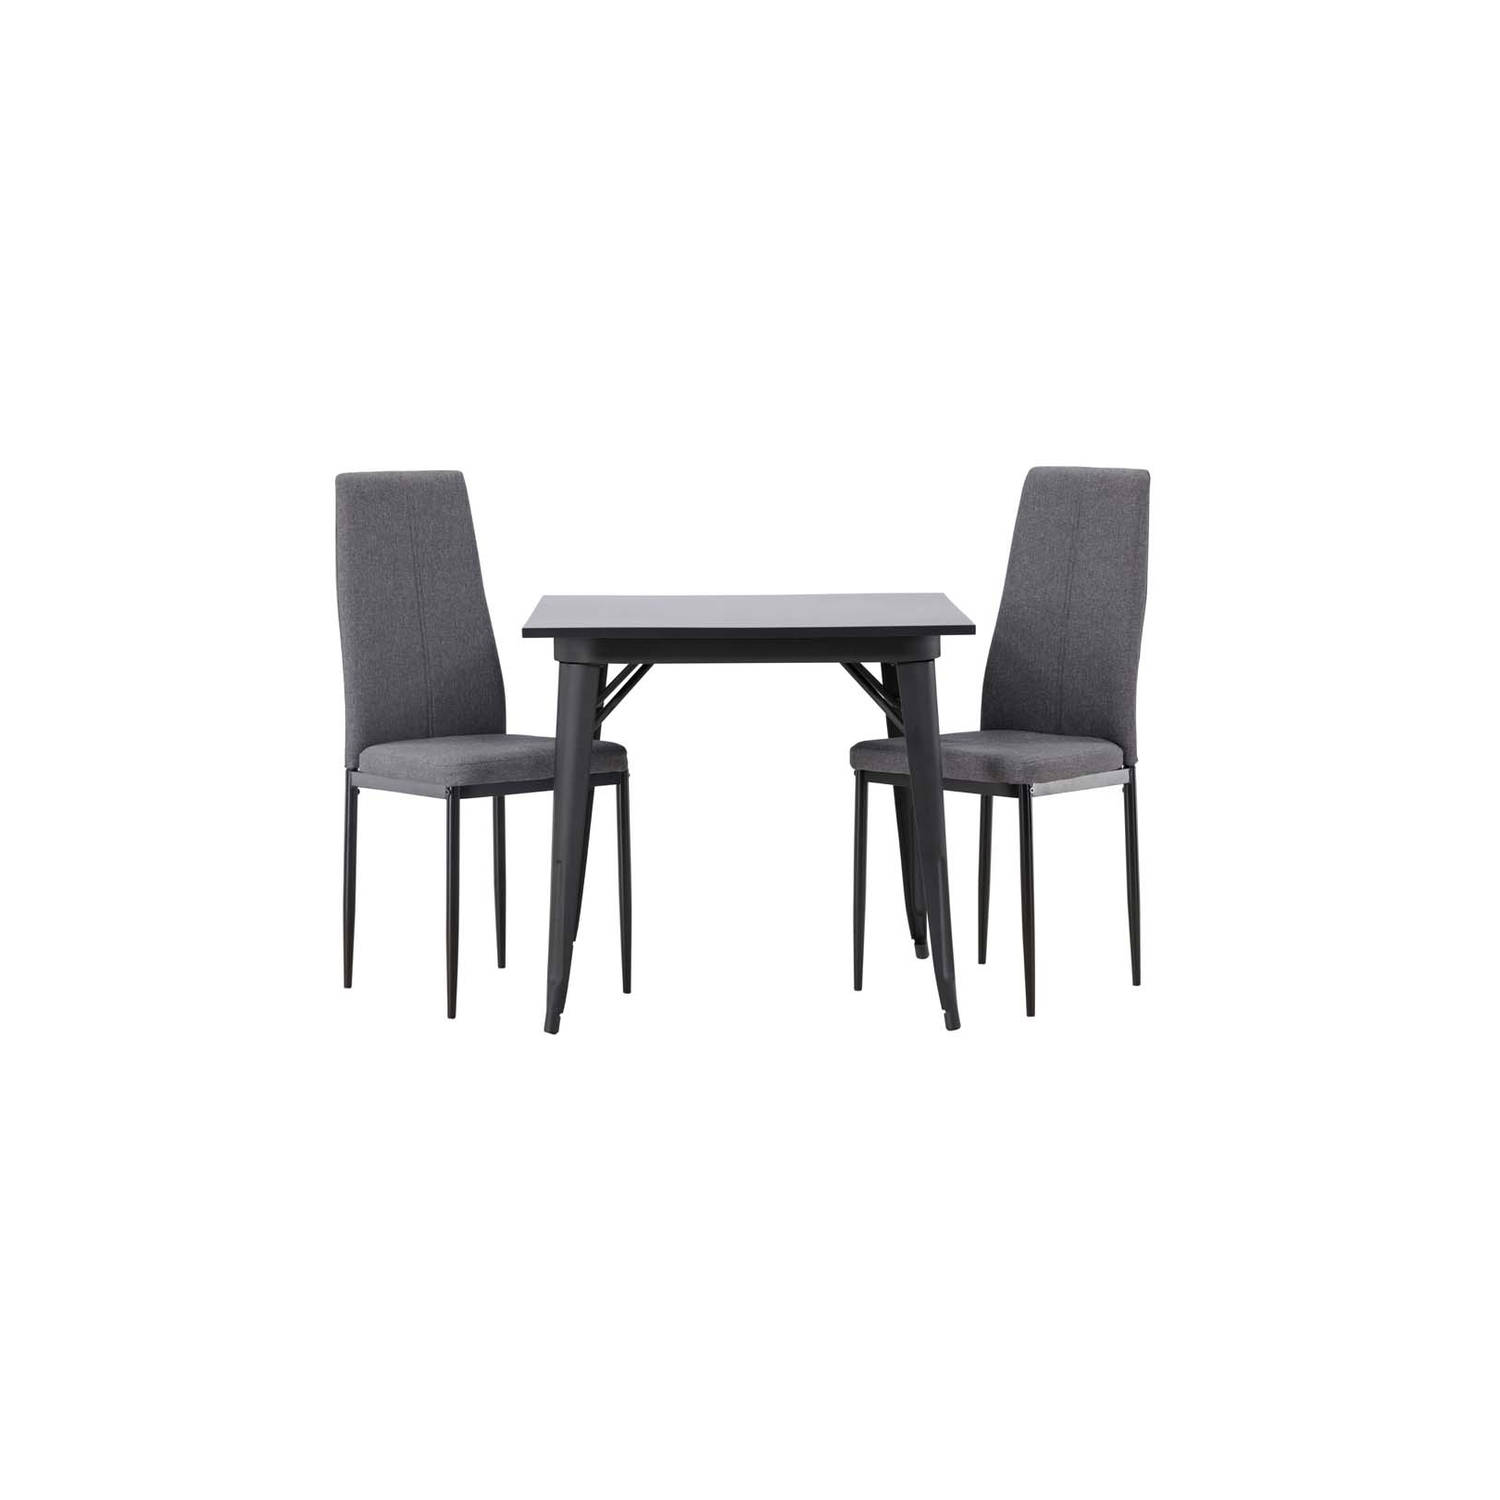 Tempe eethoek tafel zwart en 2 Petra stoelen grijs.